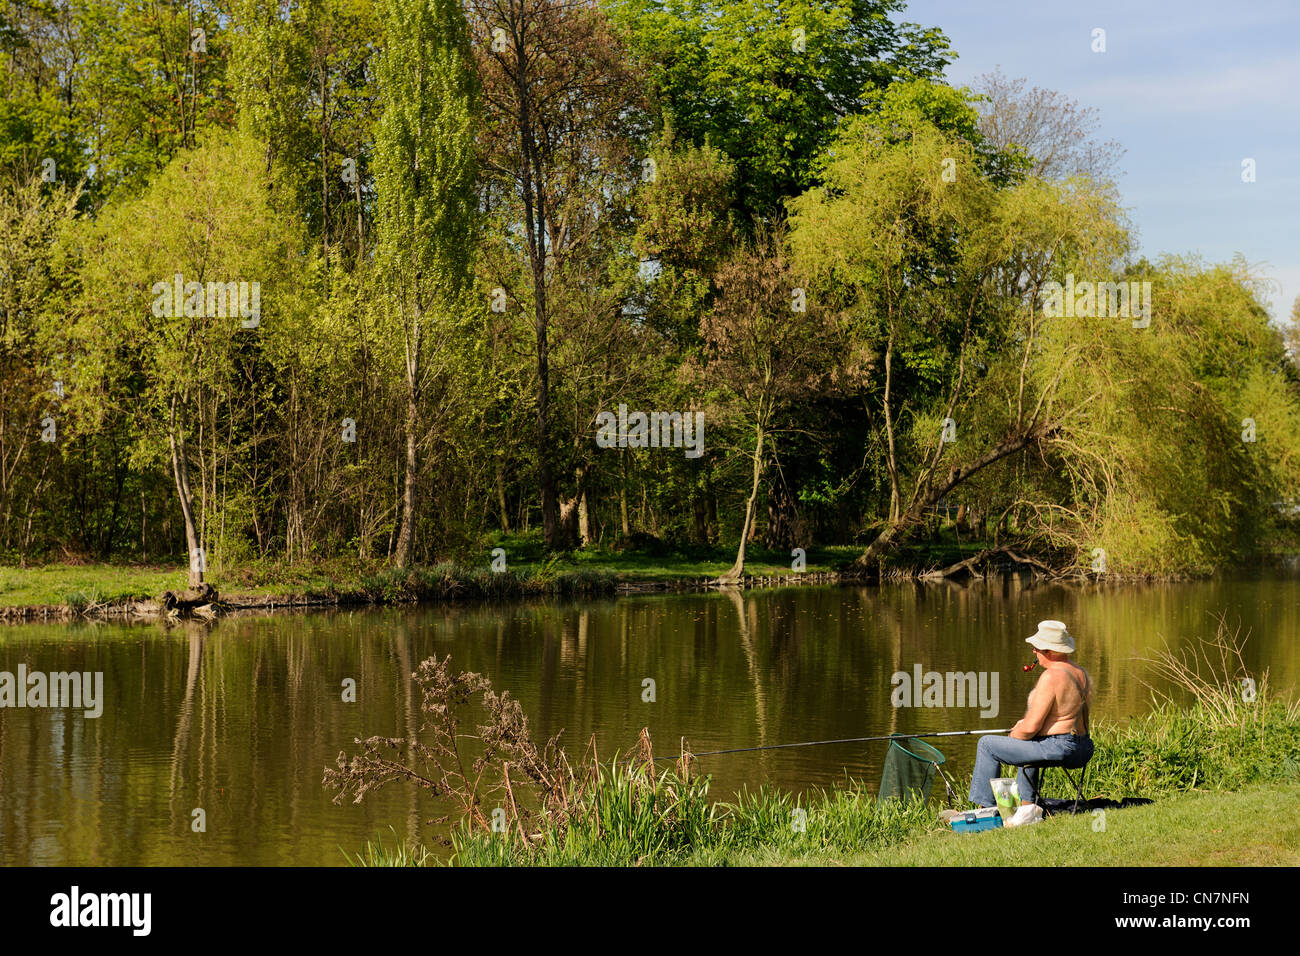 France, Paris, Bois de Boulogne, fisherman on the banks of the Etang de Longchamp Stock Photo